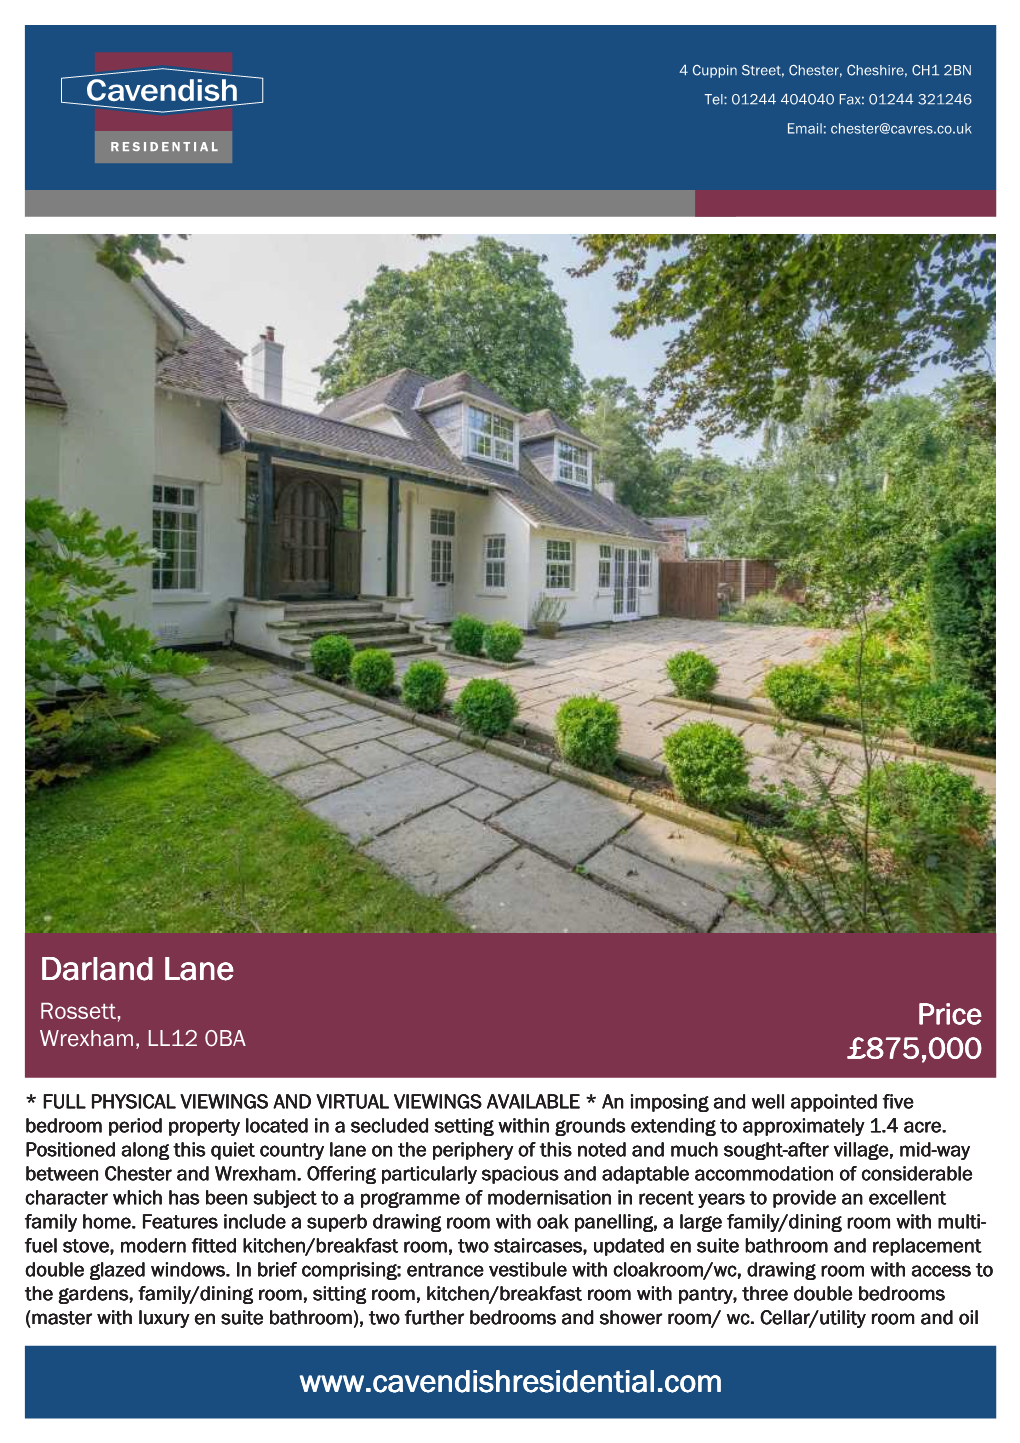 Darland Lane Rossett, Price Wrexham, LL12 0BA £875,000